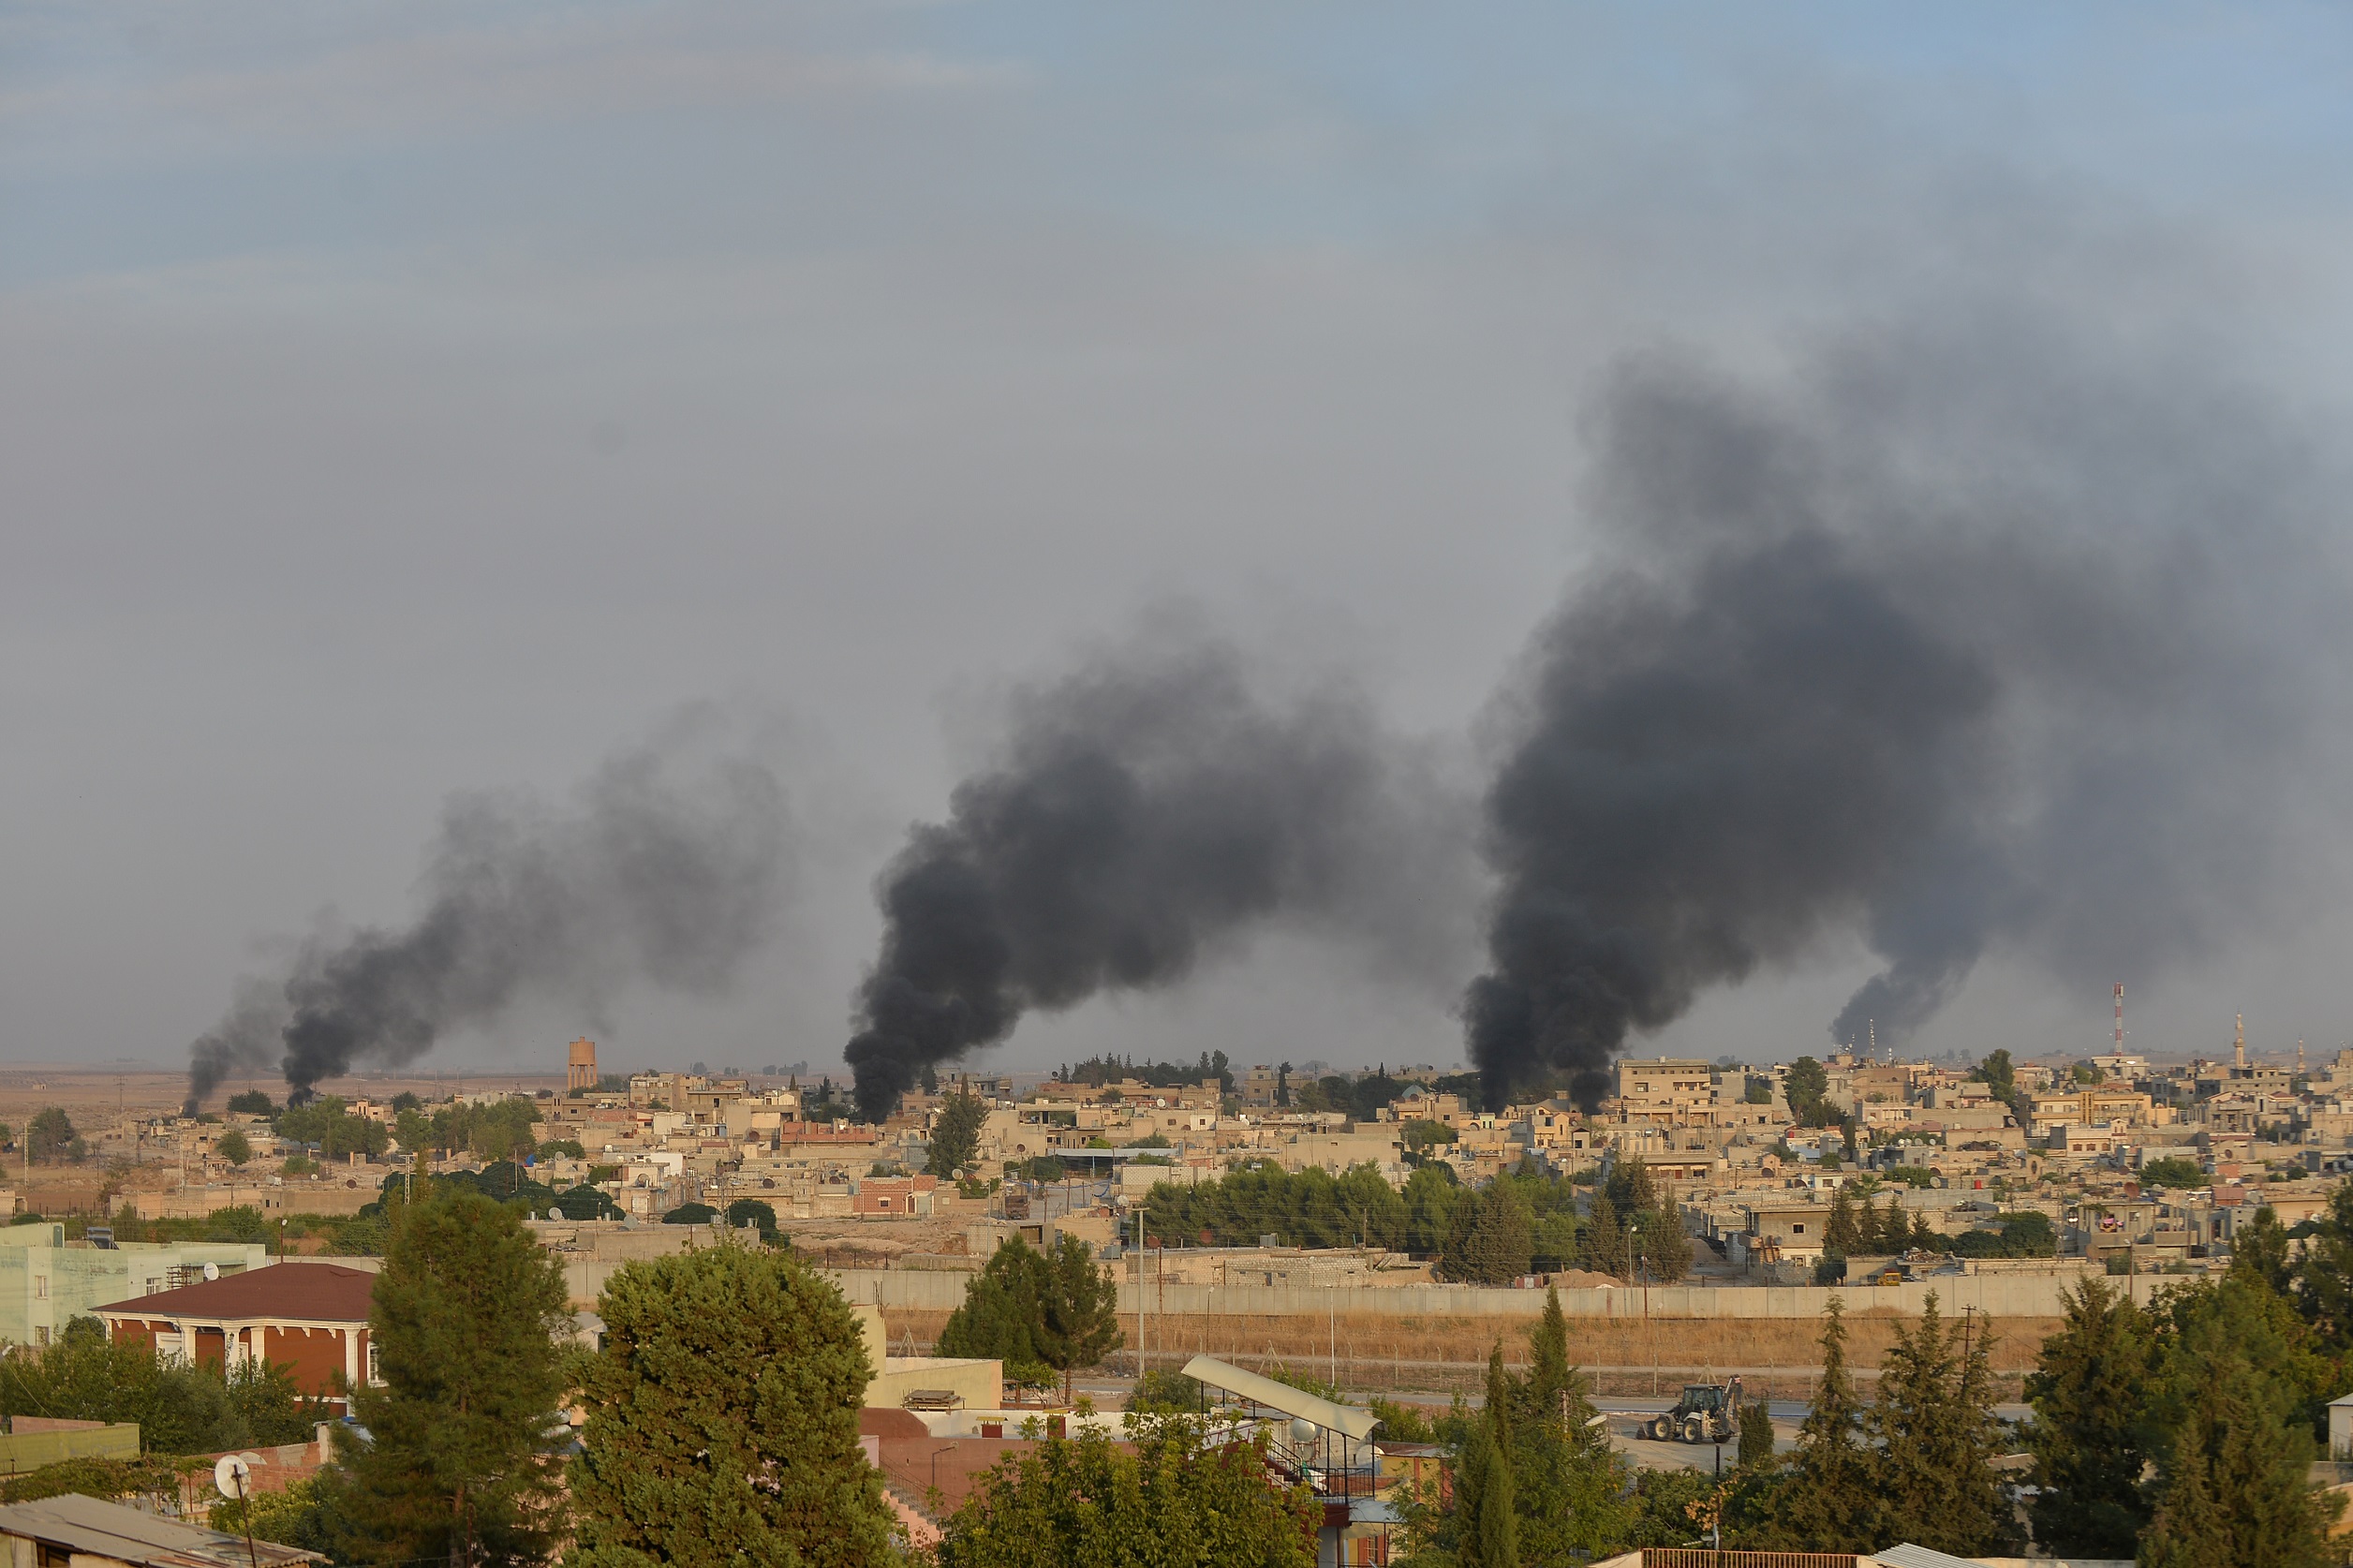 دخان متصاعد من منطقة رأس العين شمال سوريا بعد قصف تركي، 9 تشرين الأول/أكتوبر 2019. (رويترز)